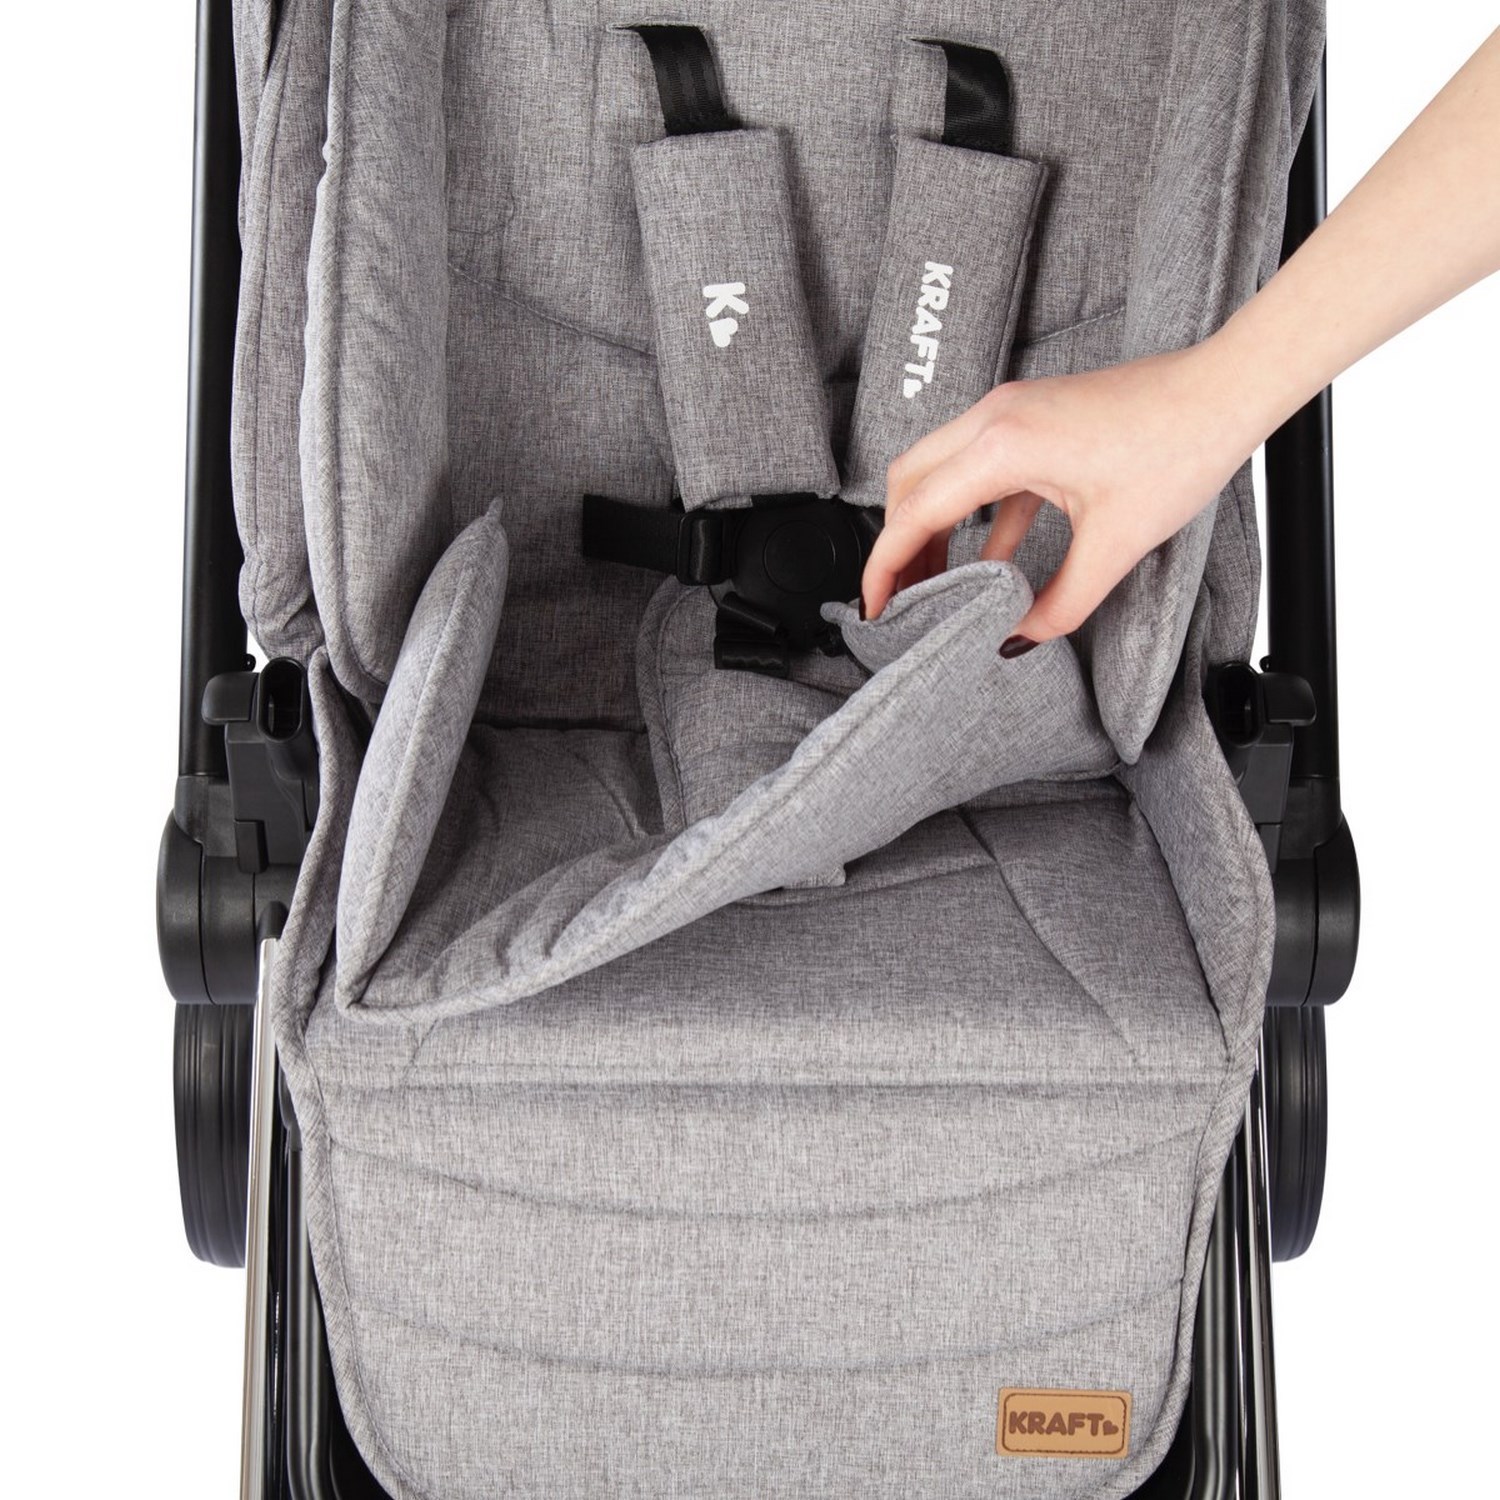 Kraft Cheer Travel Sistem Bebek Arabası Dark Grey